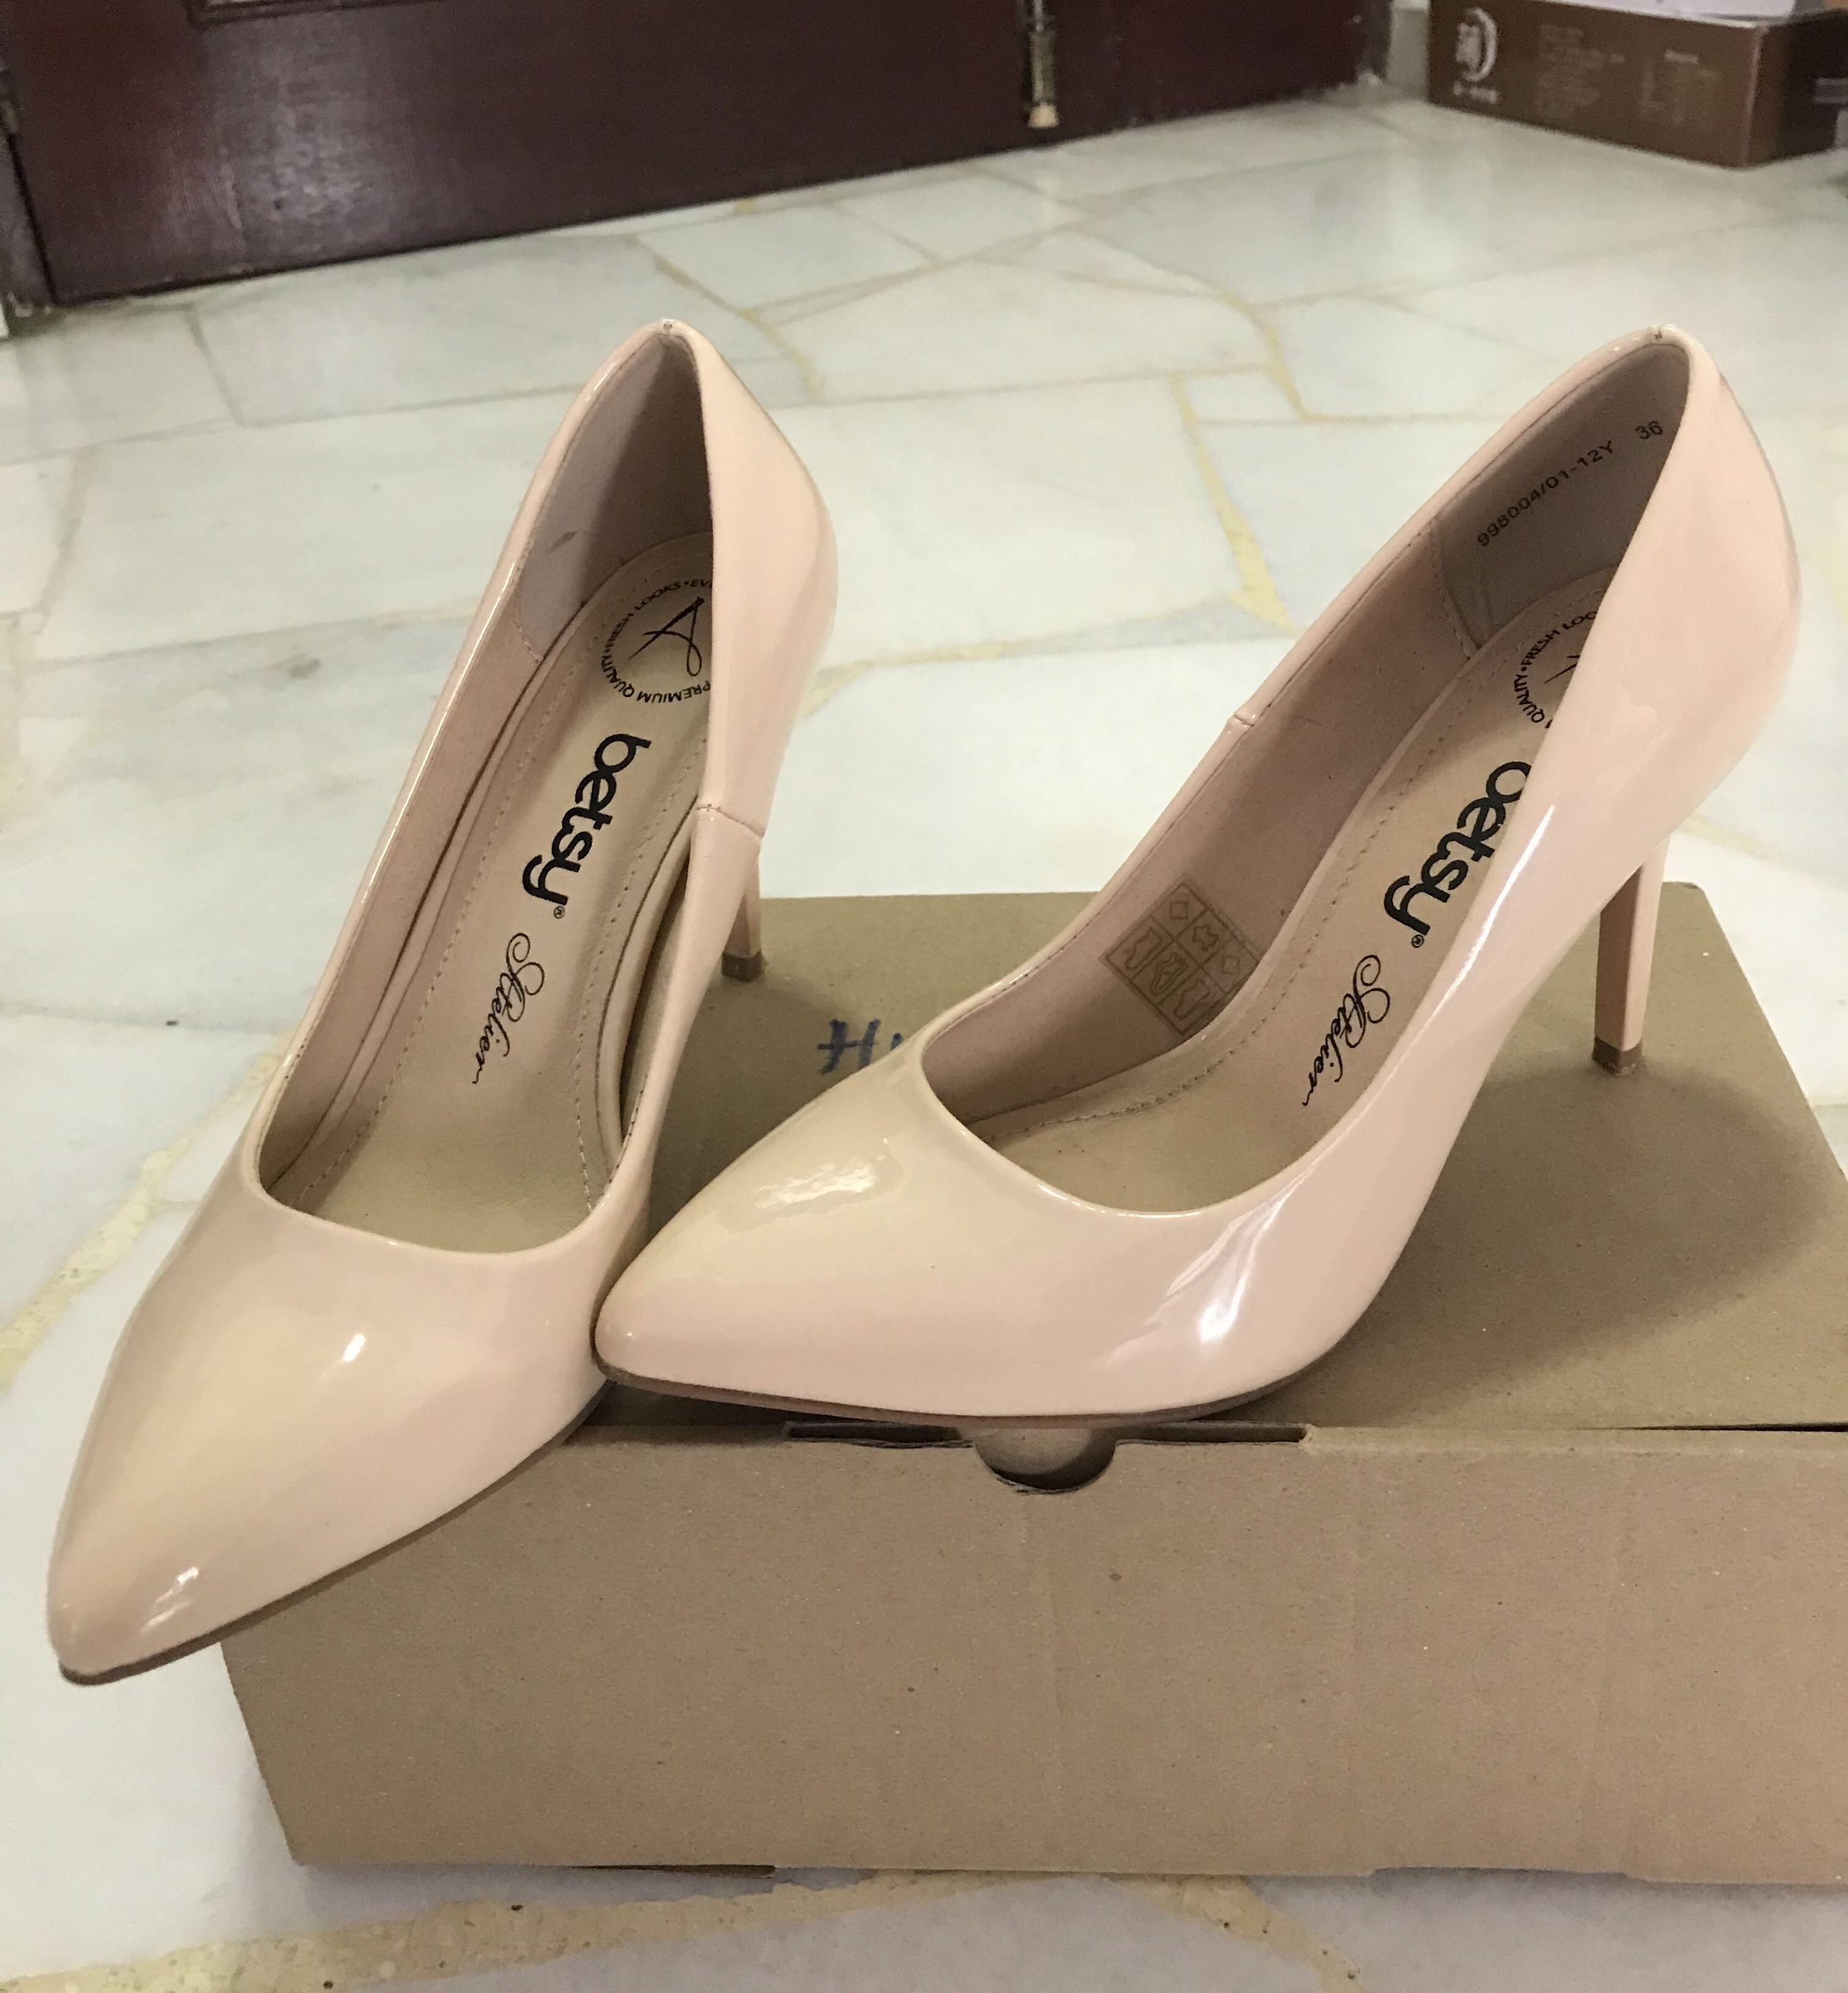 Share more than 145 peach high heels best - esthdonghoadian